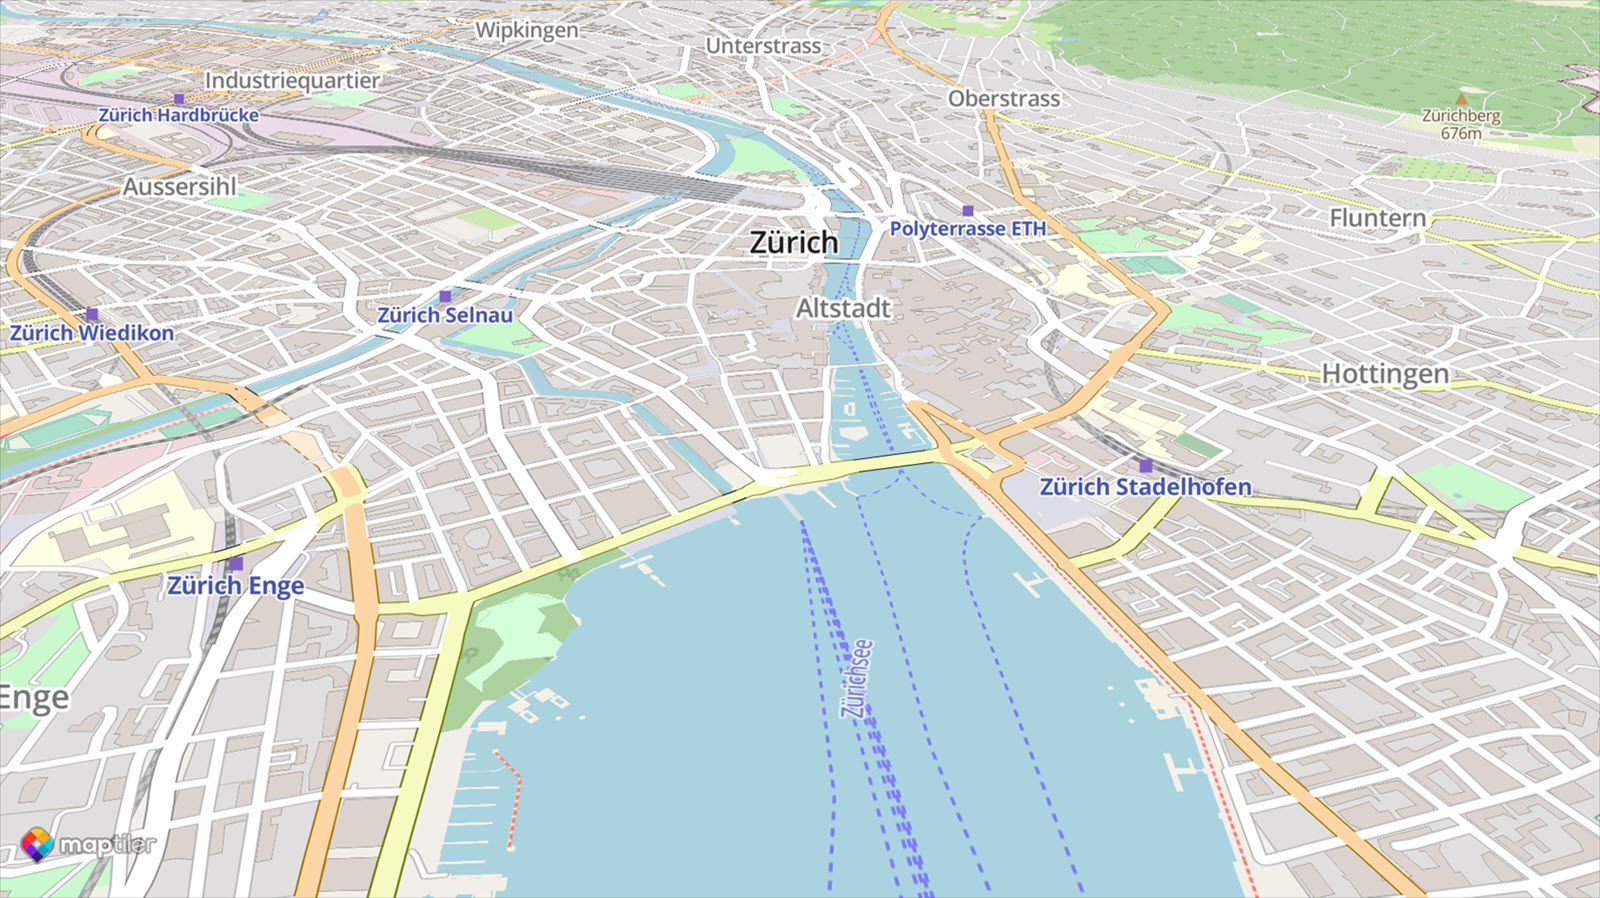 OpenStreetMap of Zurich